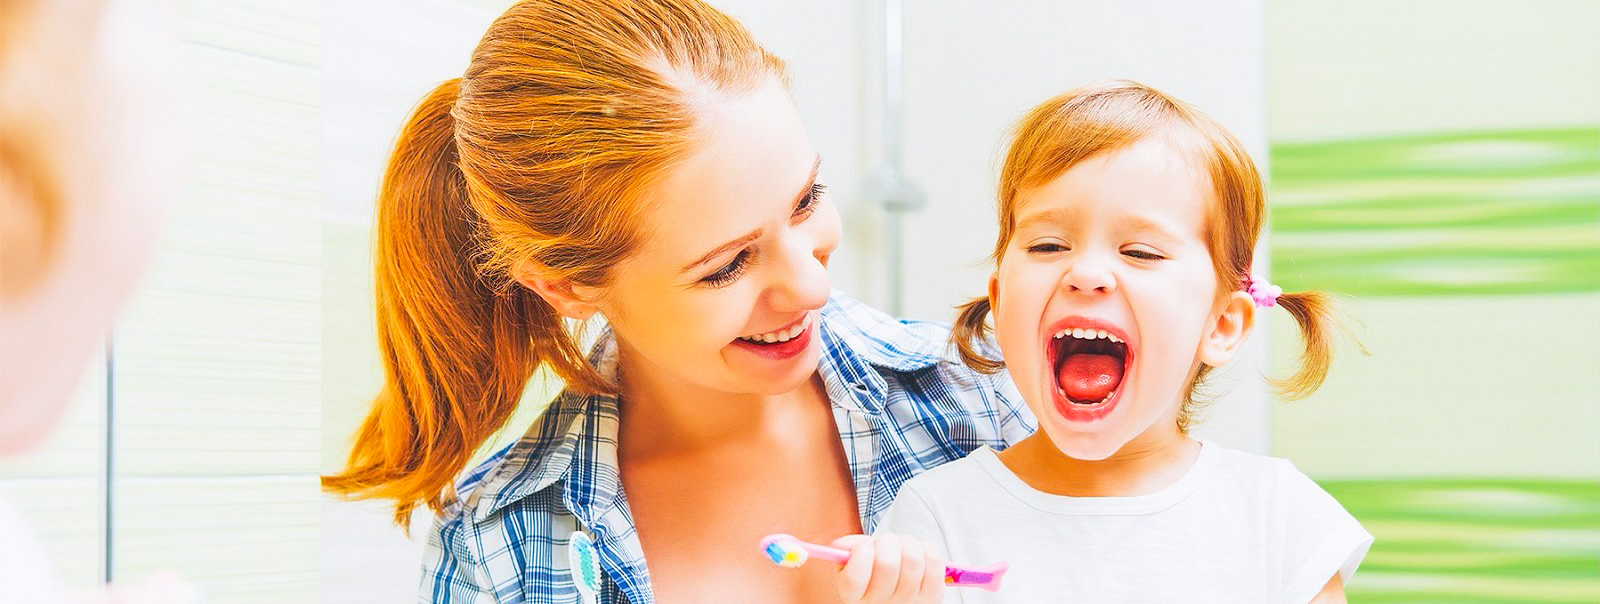 Iite S1 - smart toothbrush teaches children to brush teeth correctly